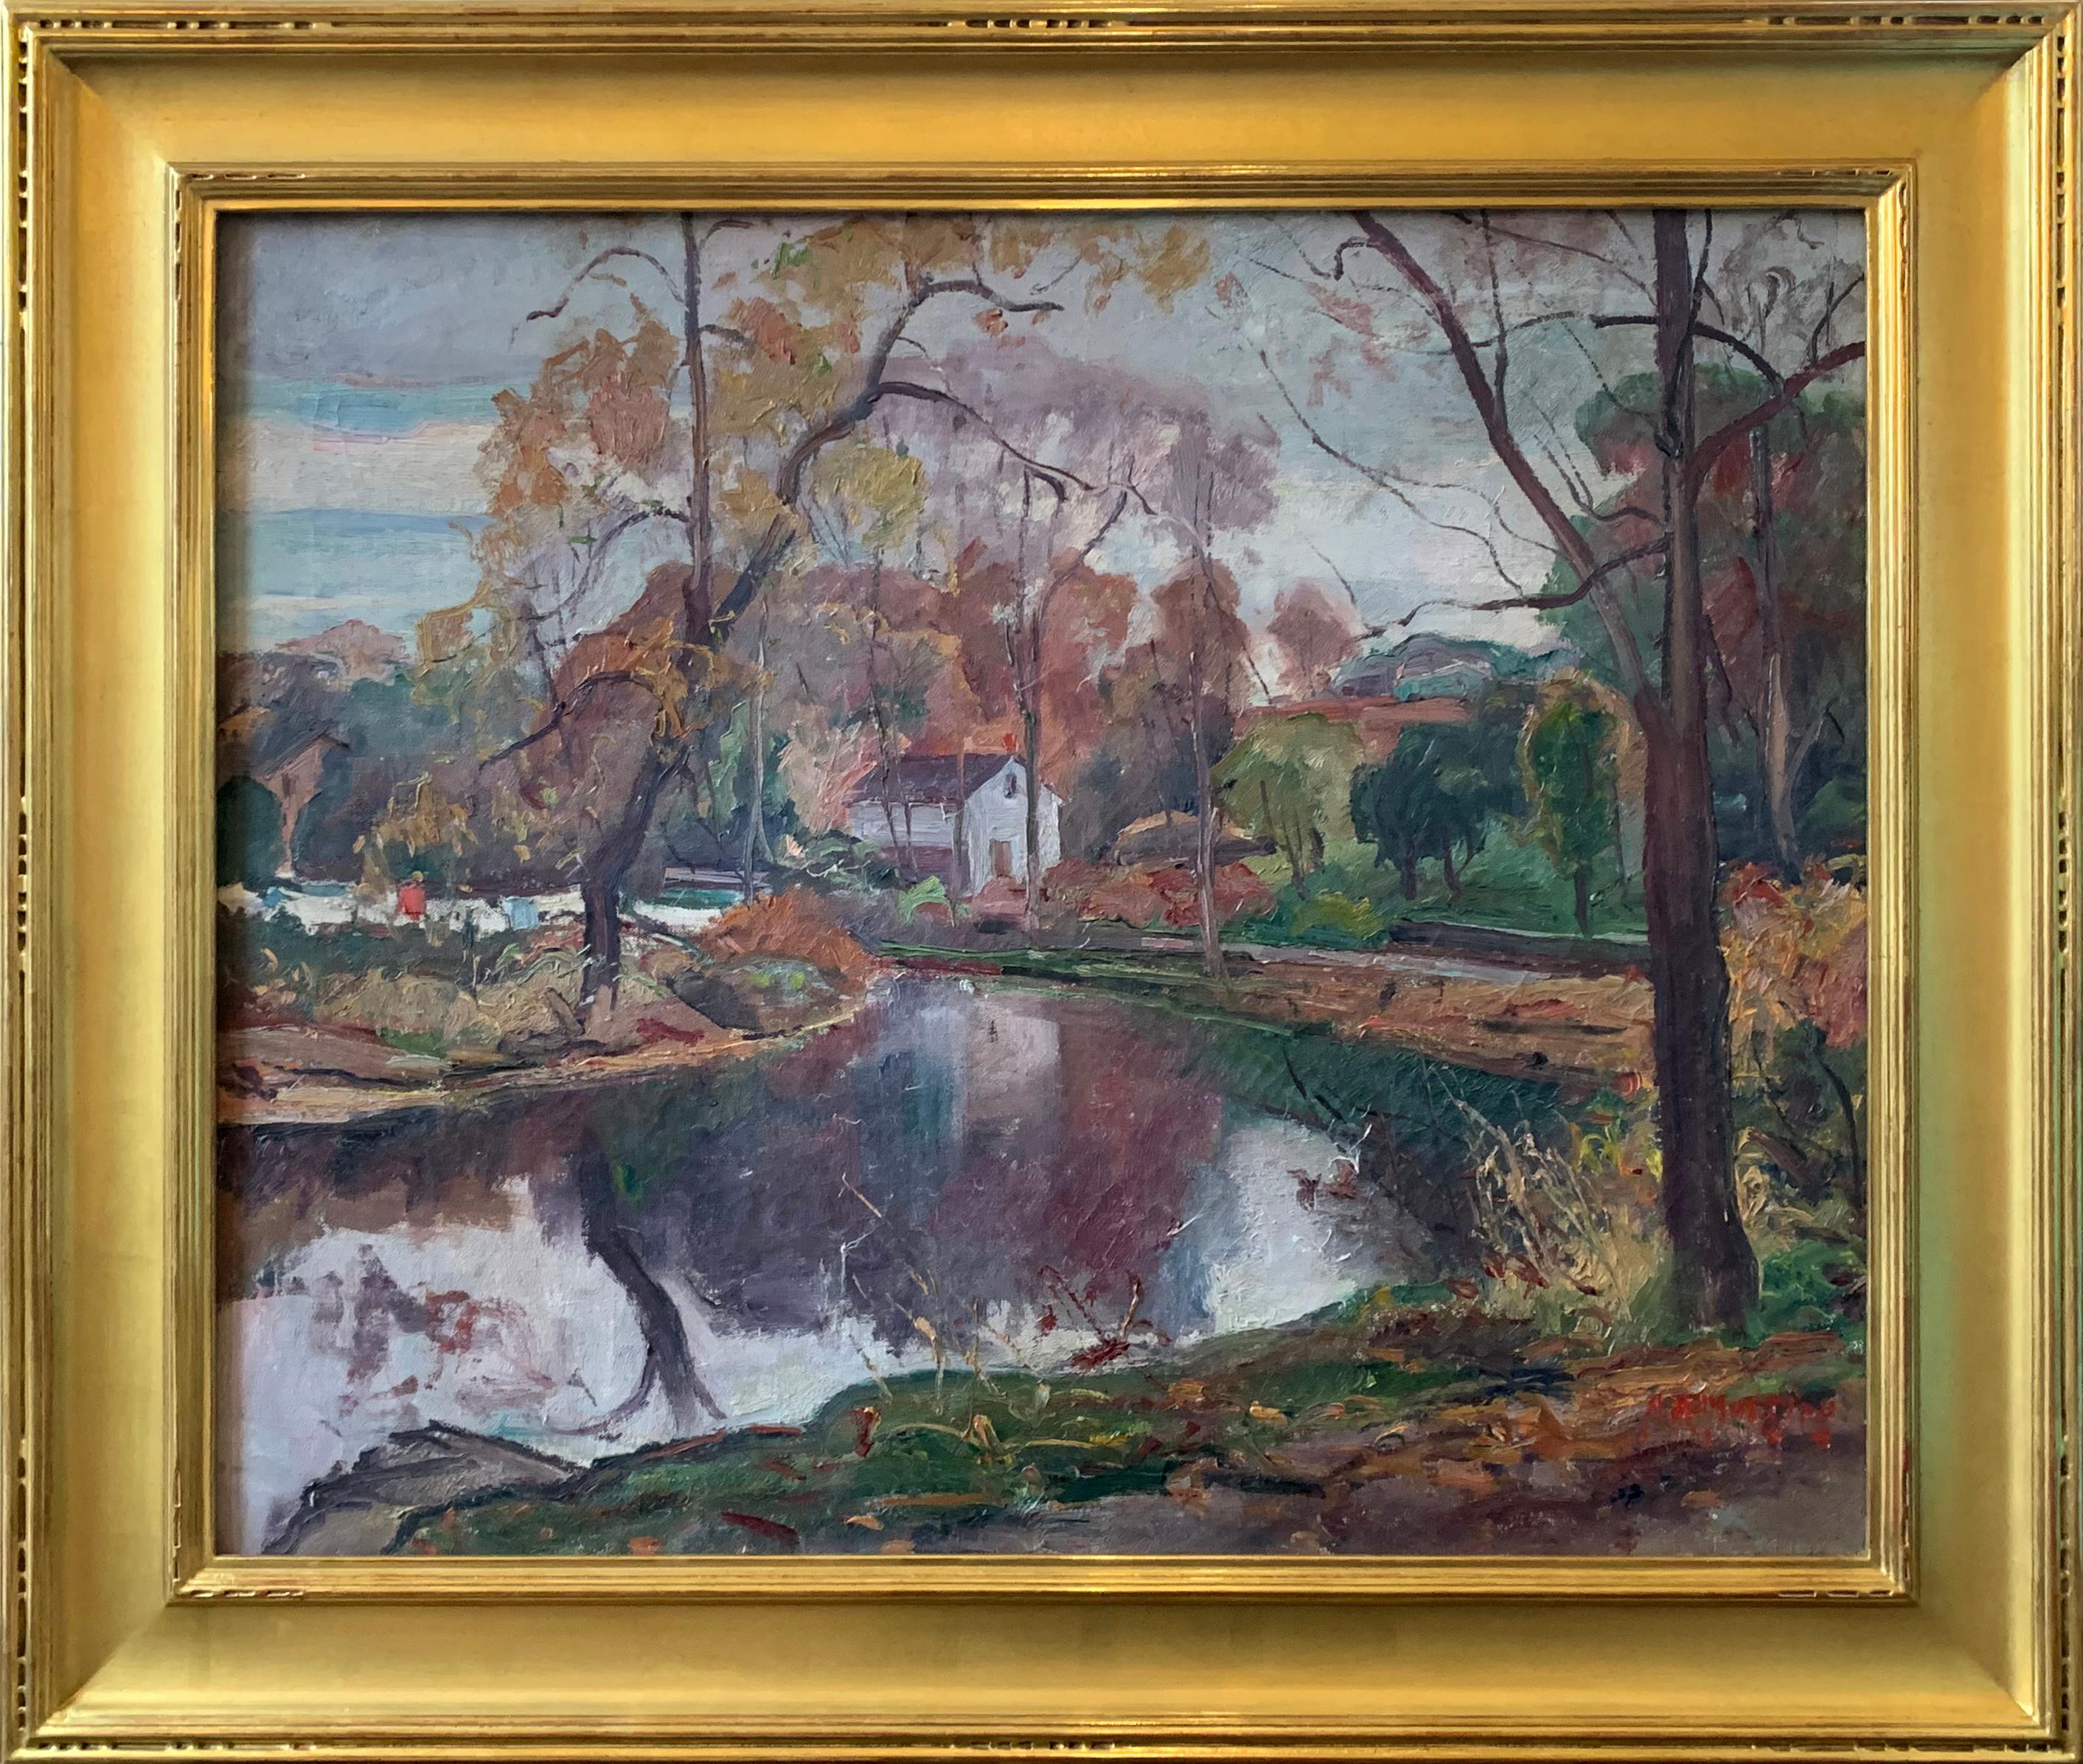 Antonio Pietro Martino Landscape Painting - Reflections, American Impressionist Landscape, Regional Scene, Delaware River